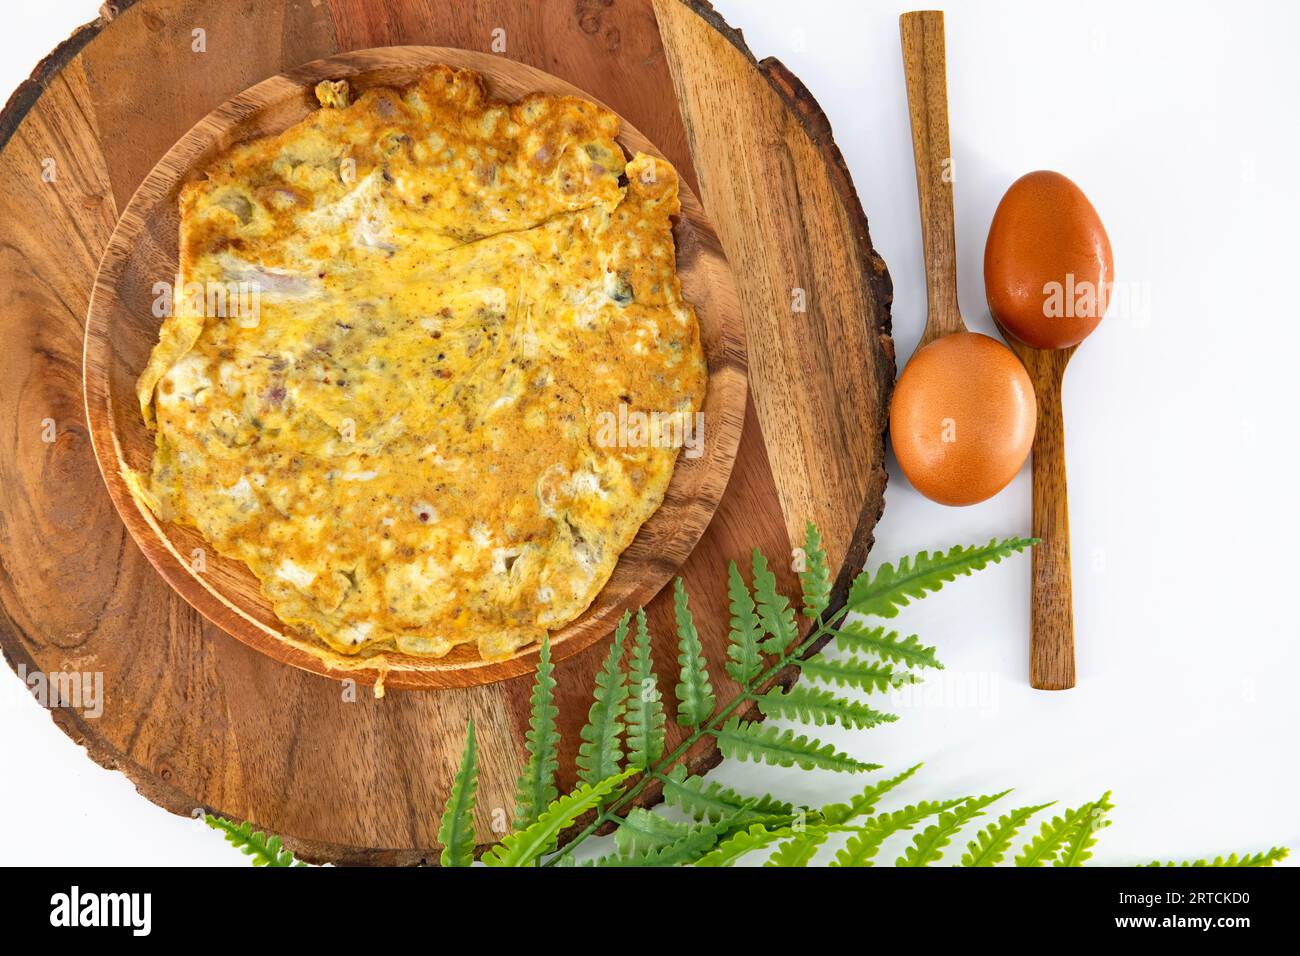 Würziges Pfefferomelett, hausgemacht und verzehrfertig in einem Holzteller. Braune Omelettes in Holzplatte und isoliert. Indisches hausgemachtes, würziges Omelett. Stockfoto